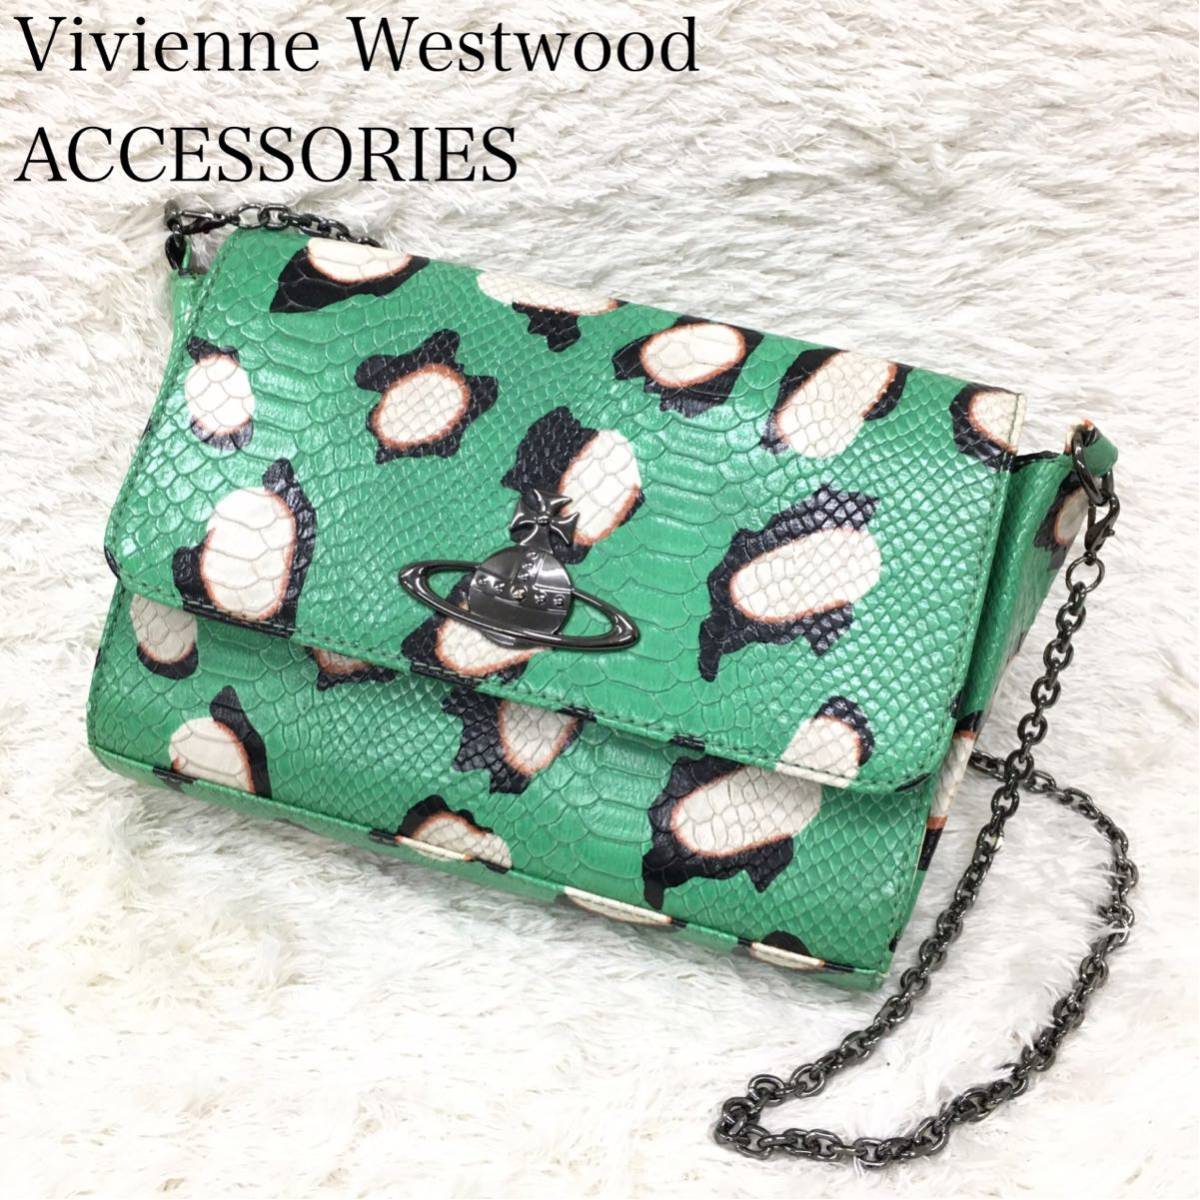 Vivienne Westwood ヴィヴィアンウエストウッド アクセサリー ショルダーバッグ 型押しパイソン チェーンベルト オーブロゴ メッキ金具  緑